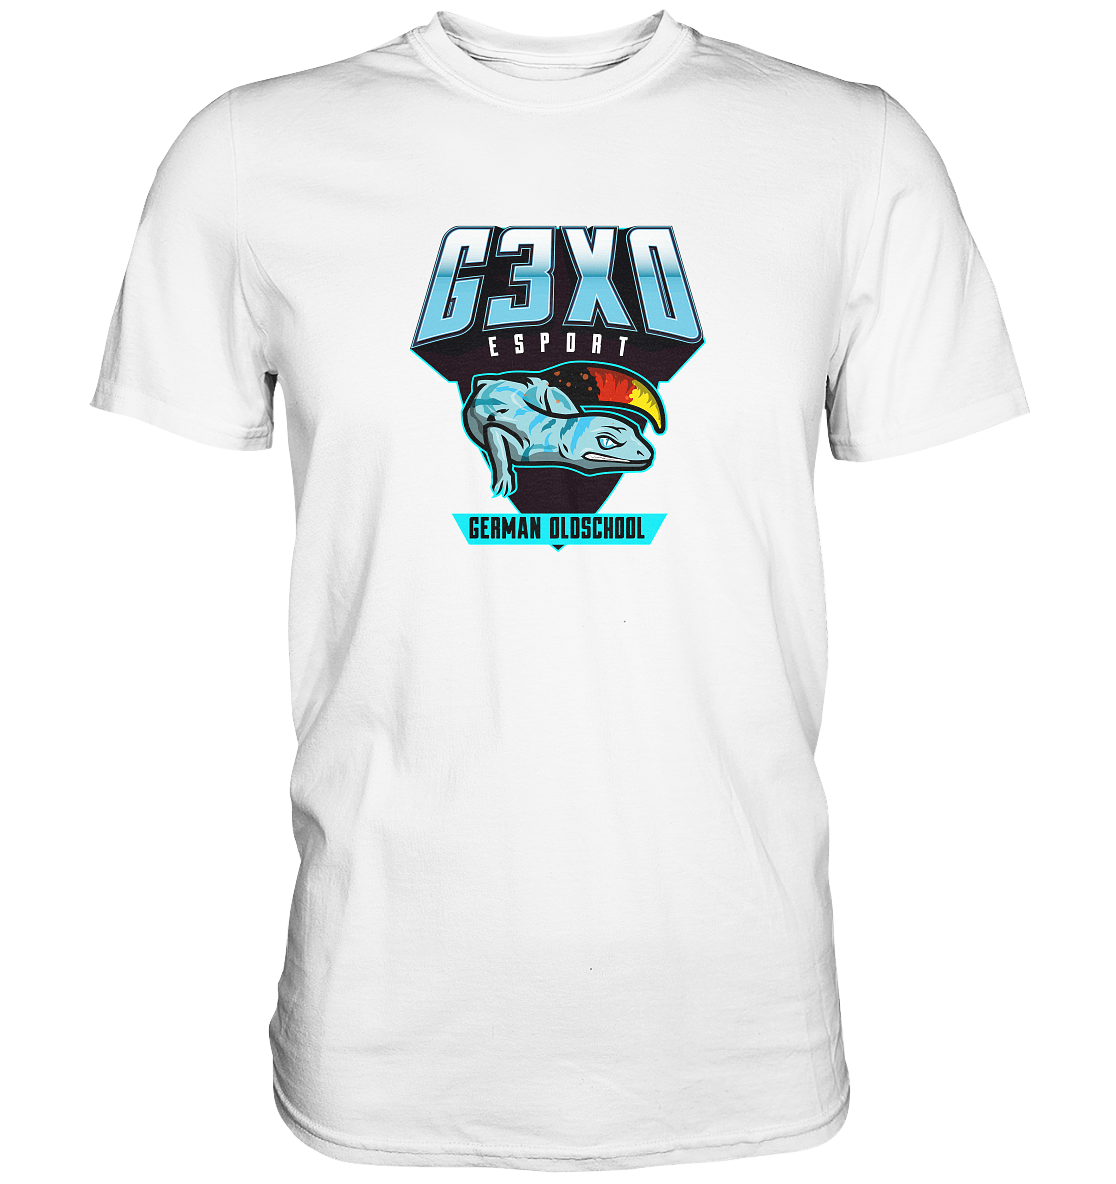 G3XO ESPORT - Basic Shirt